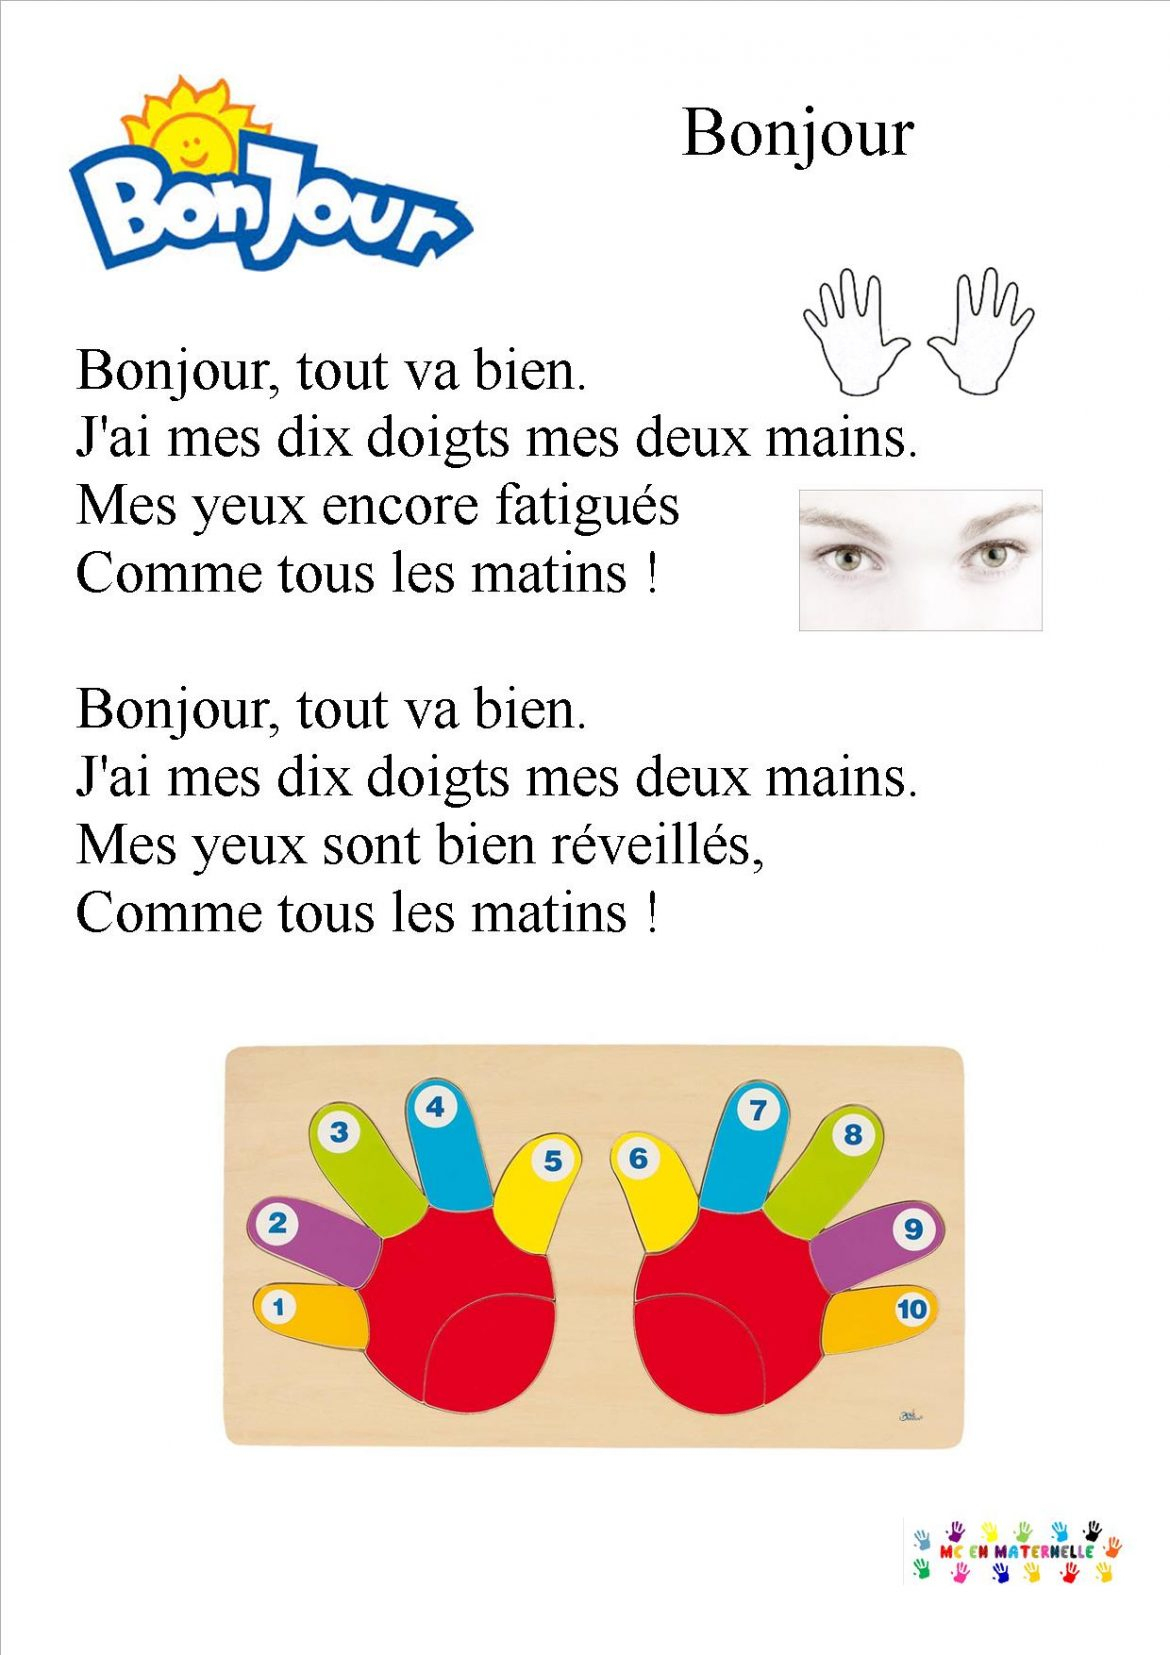 Chansons/Comptines - Page 2 - Mc En Maternelle destiné Bonjour Monsieur Comment Ca Va Paroles